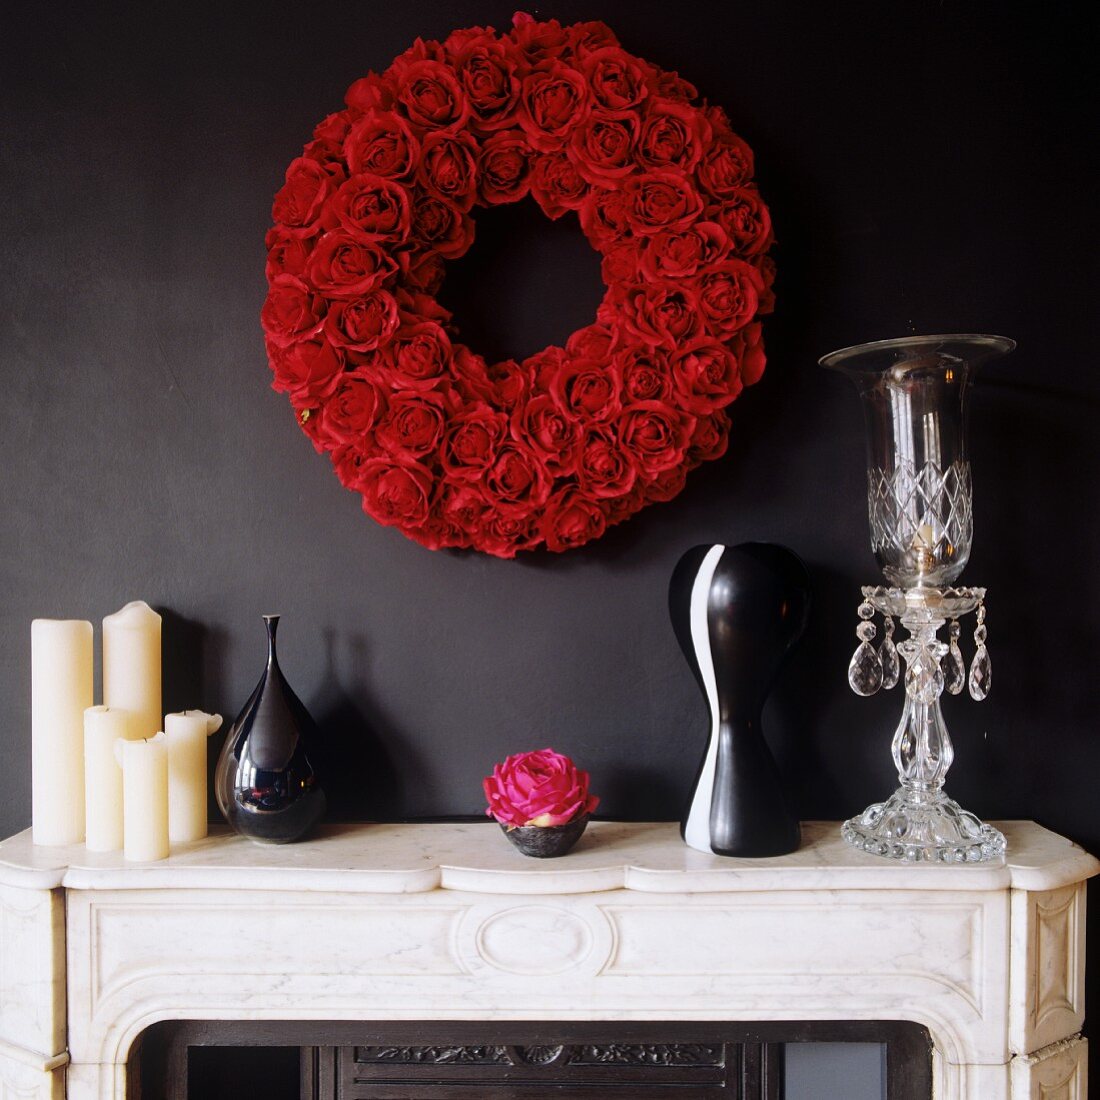 Kerzen und Vasen auf weißem Stein Kaminsims und Kranz aus roten Rosen an schwarzer Wand